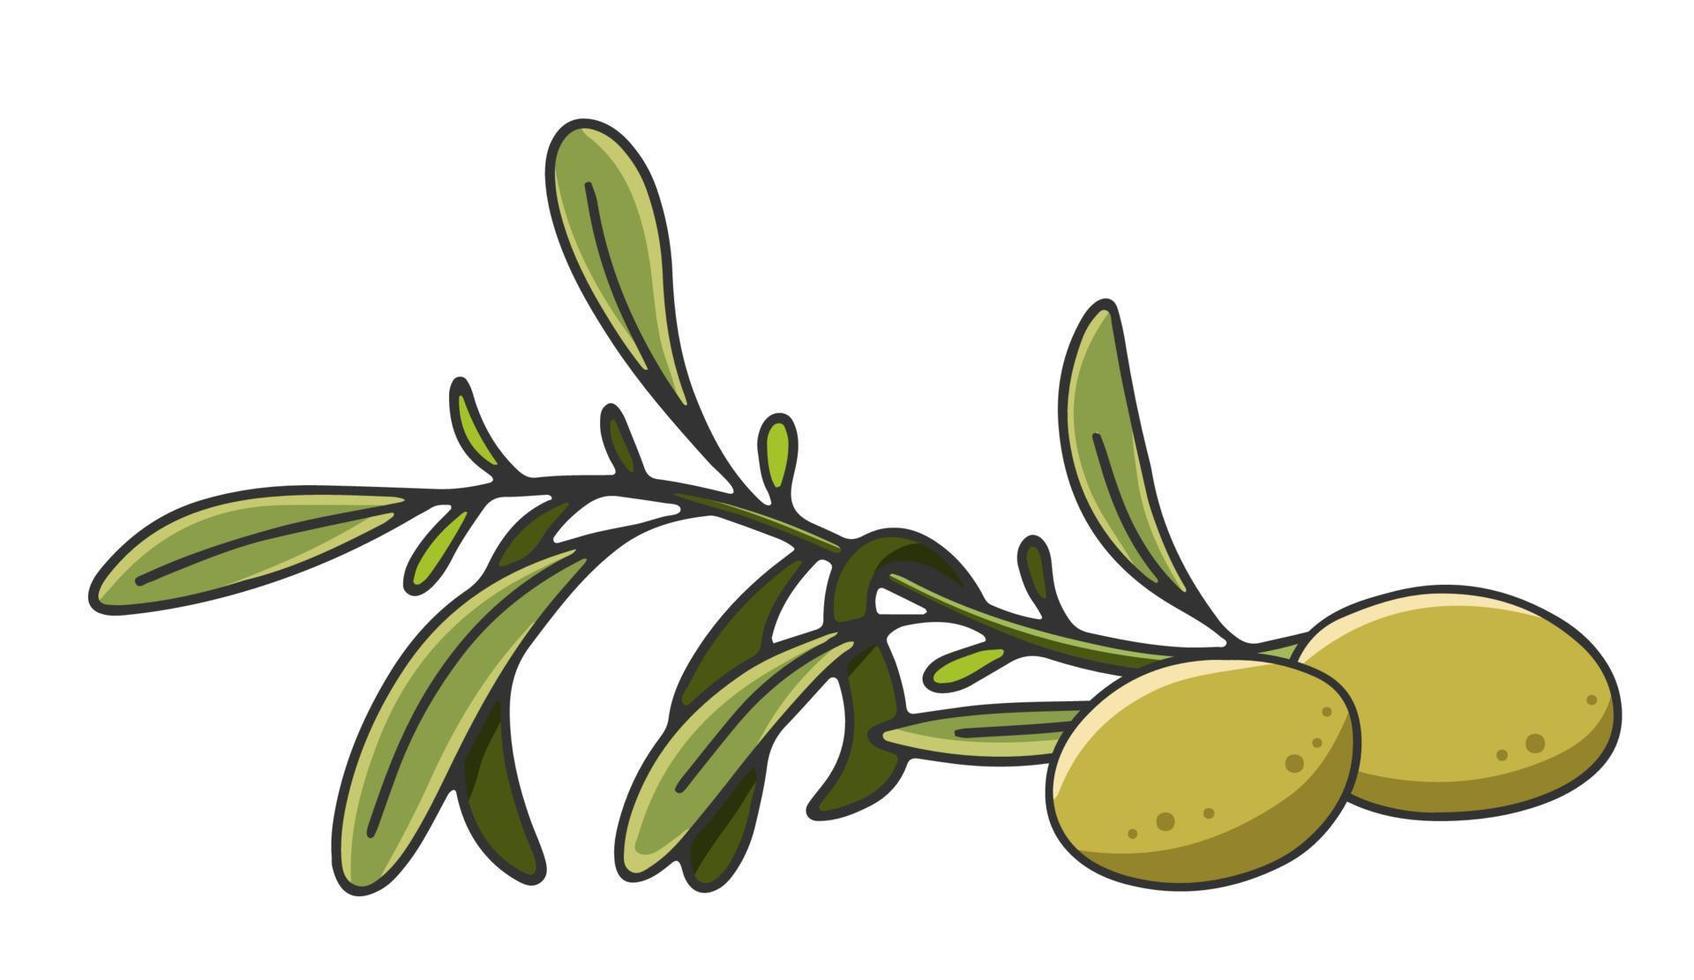 rama de olivo con hojas y aceitunas. etiqueta o logotipo de aceite de oliva para una tienda o mercado de agricultores. emblema retro de la ilustración de vector de aceite de oliva orgánico aislado sobre fondo blanco.